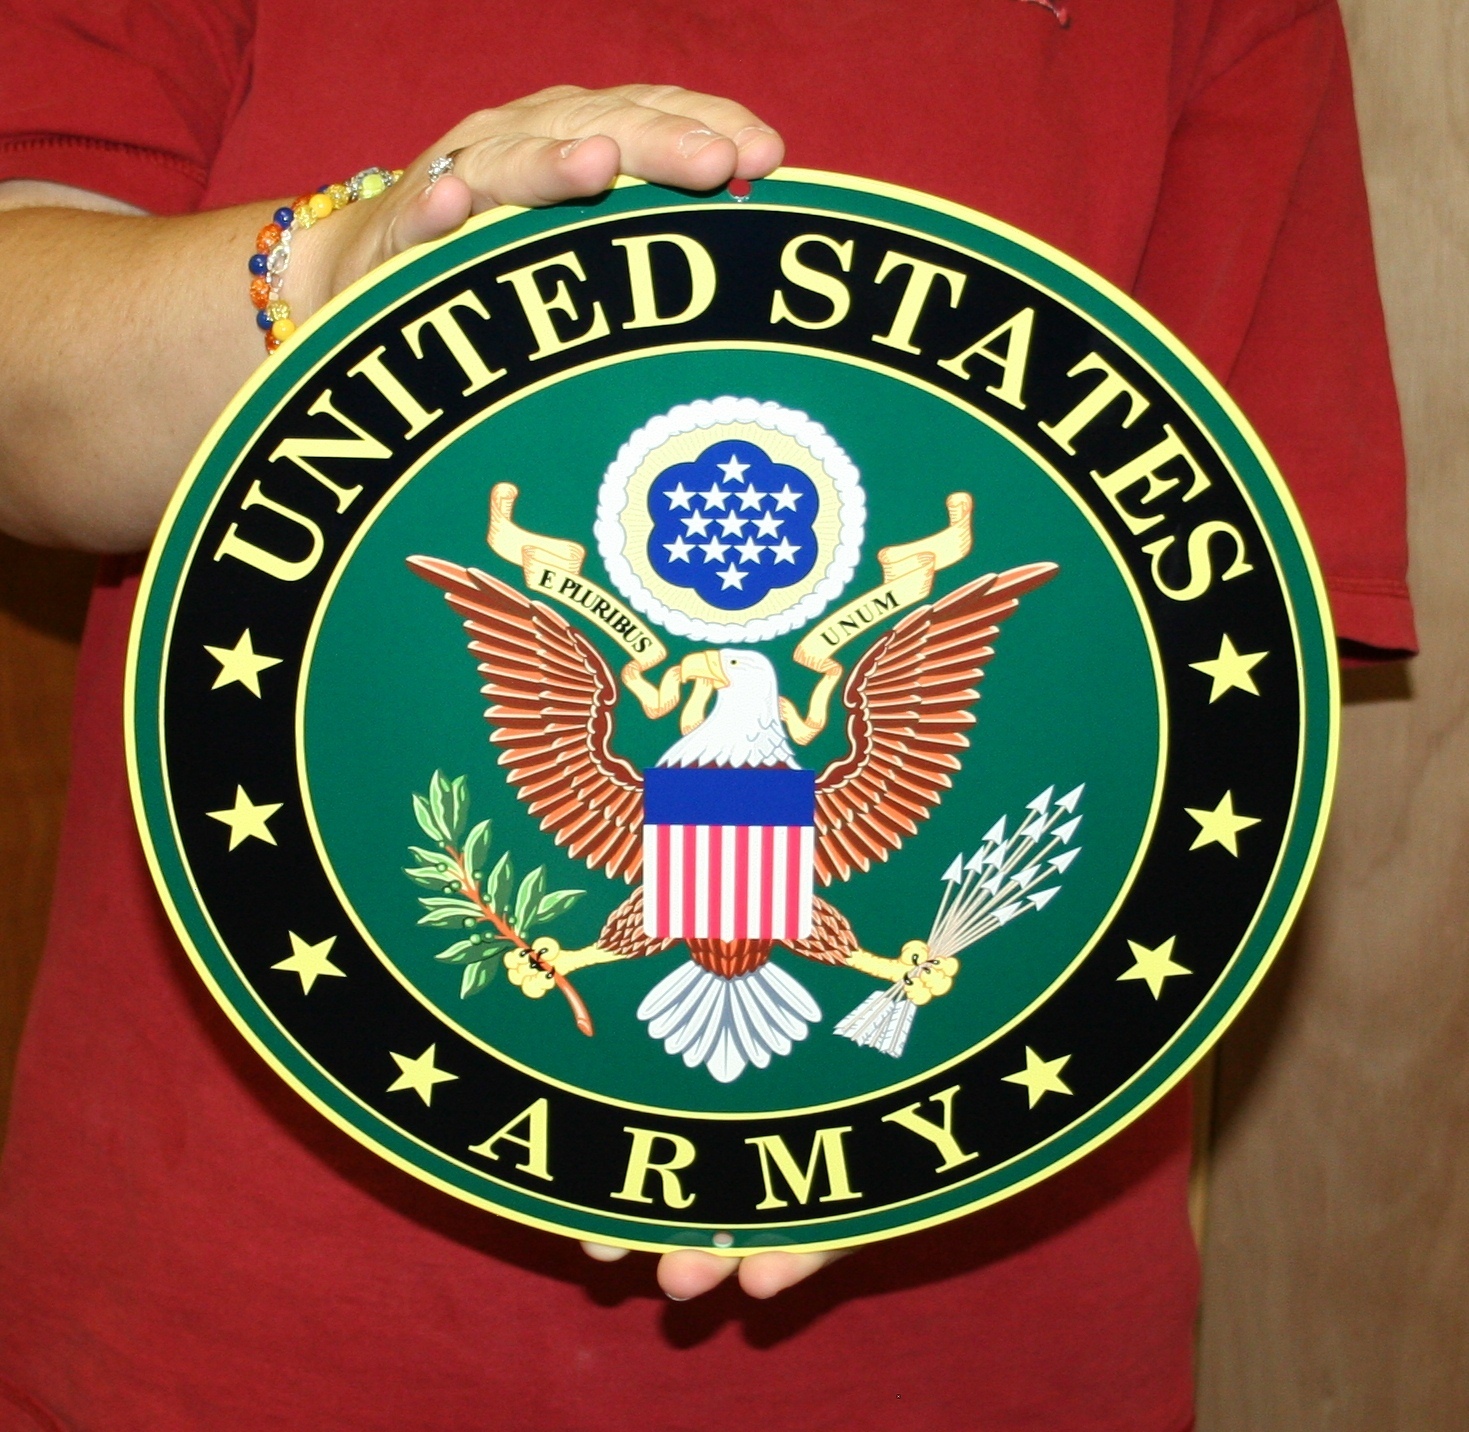 U.S. Army Round logo sign